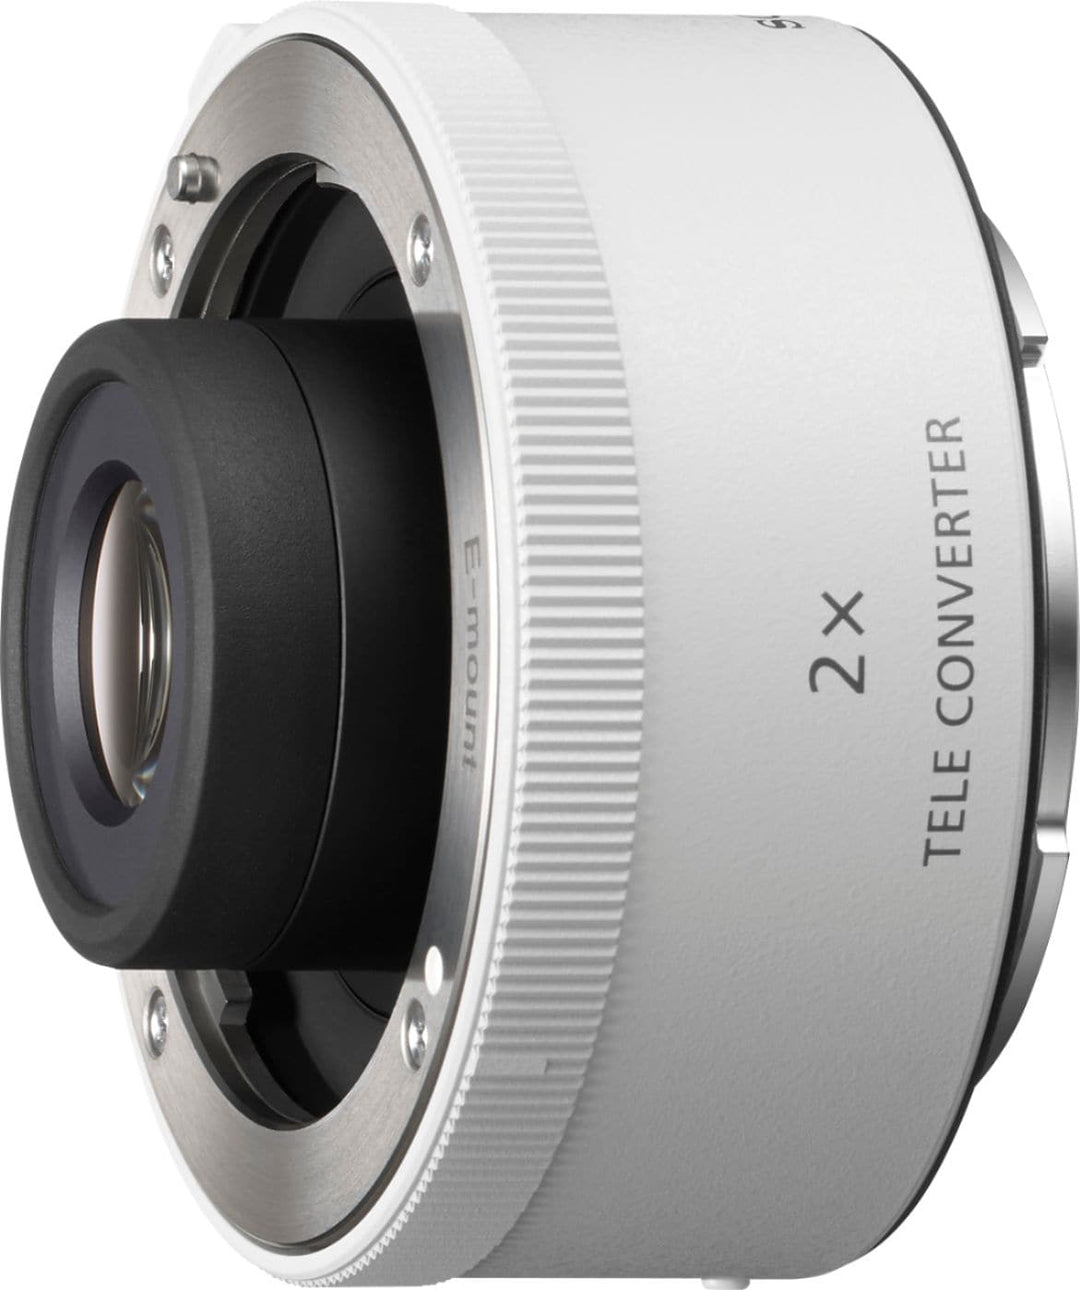 Sony - 2.0x Teleconverter Lens for Select Lenses - White_0